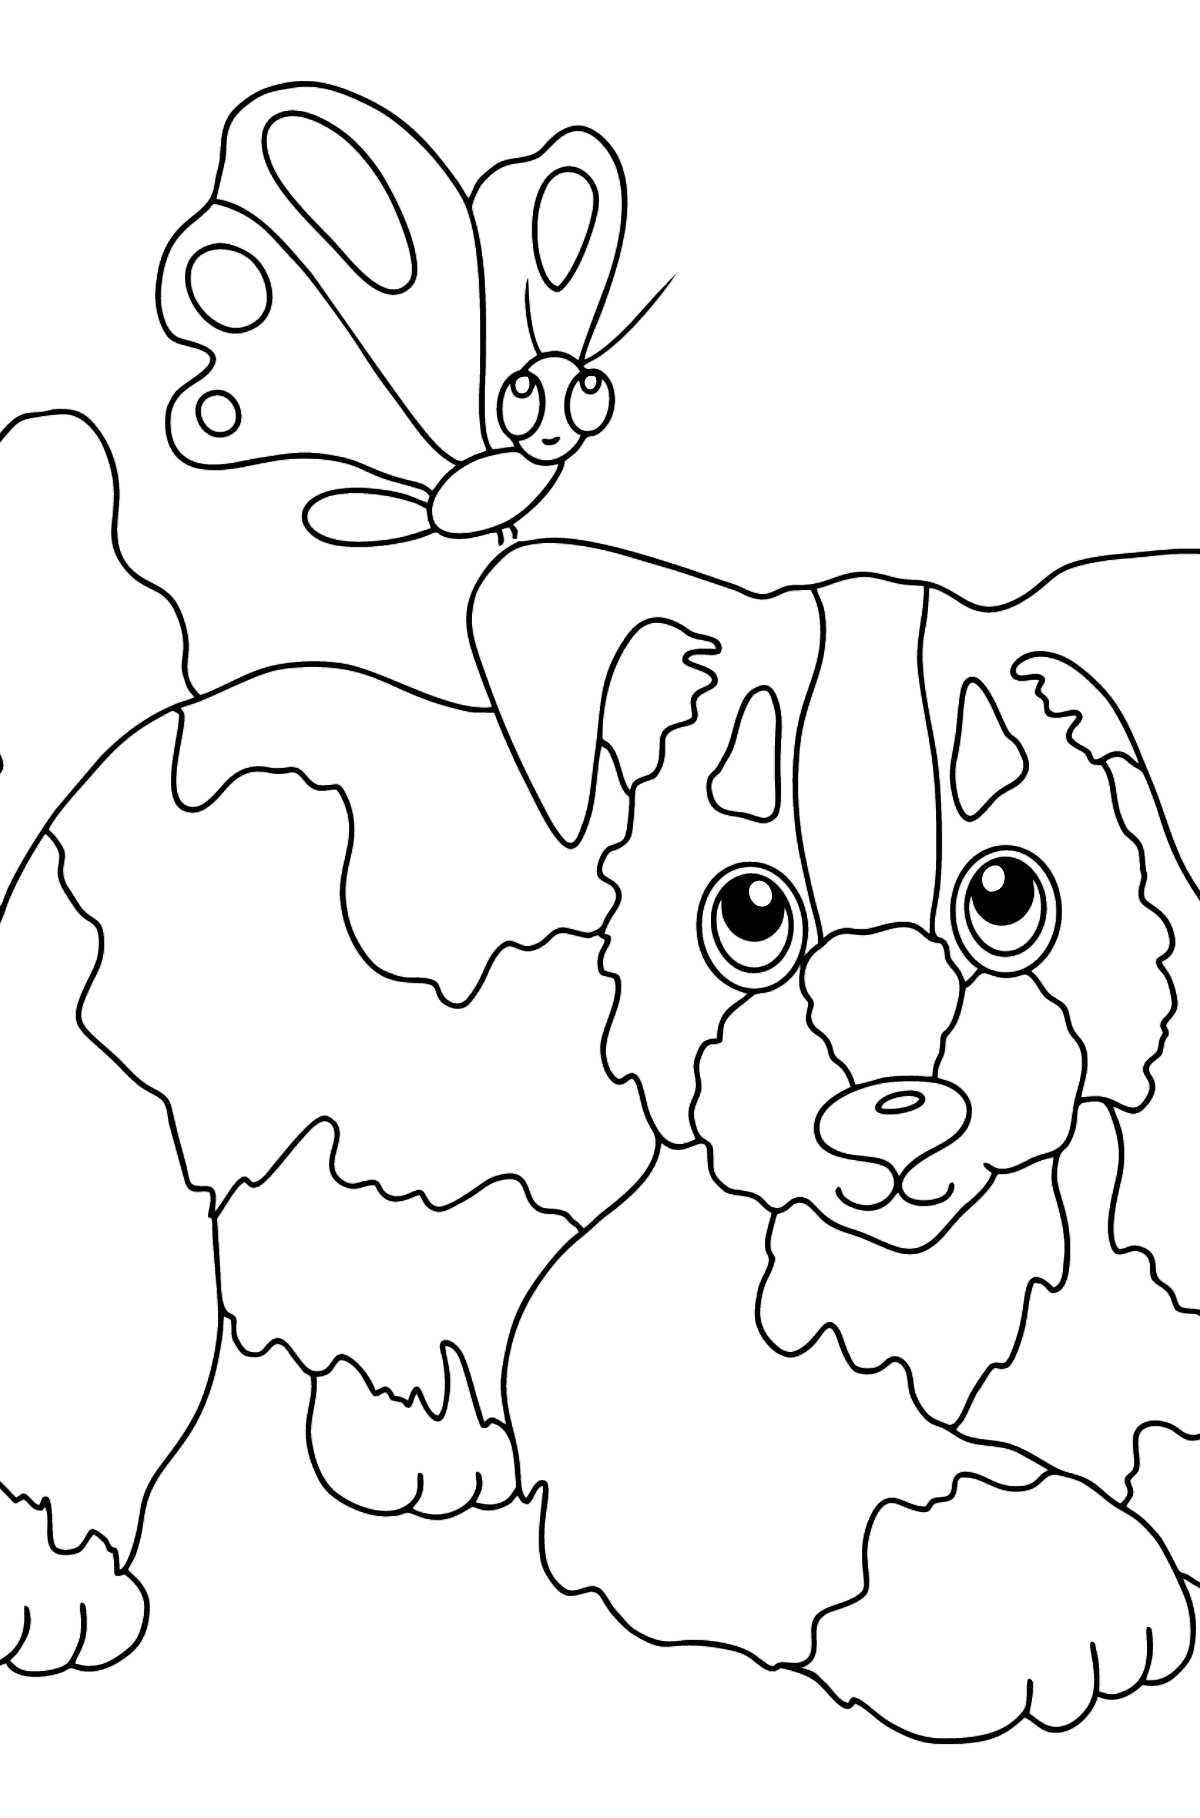 Tegning til fargelegging hund og sommerfugl (enkelt) - Tegninger til fargelegging for barn